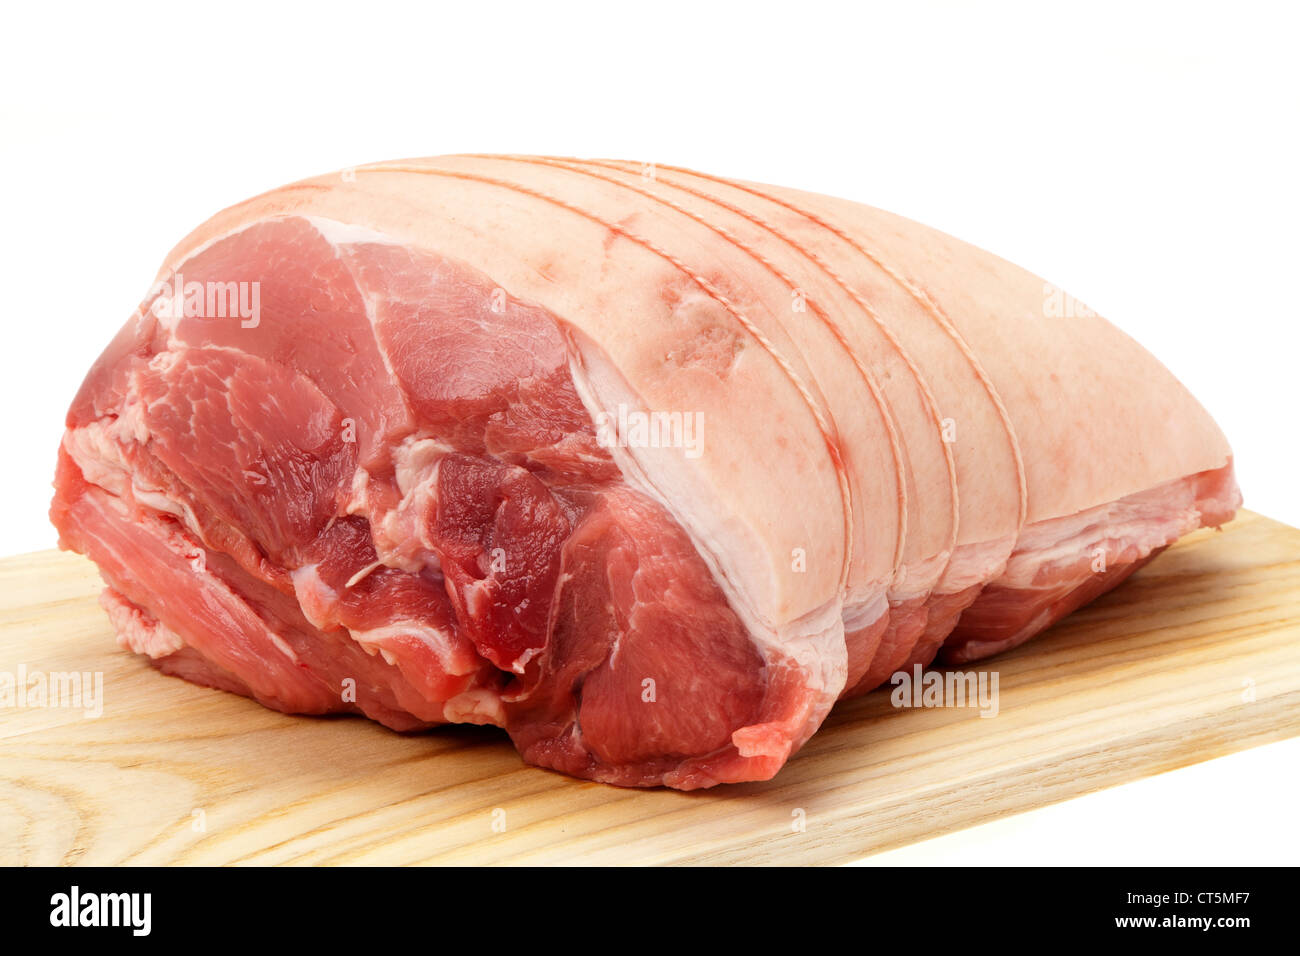 Eine ungekochte Schulter vom Schwein auf ein Holzbrett gelegt, der Metzger hat es mit Schnur gebunden und es ist jetzt Backofen bereit Stockfoto